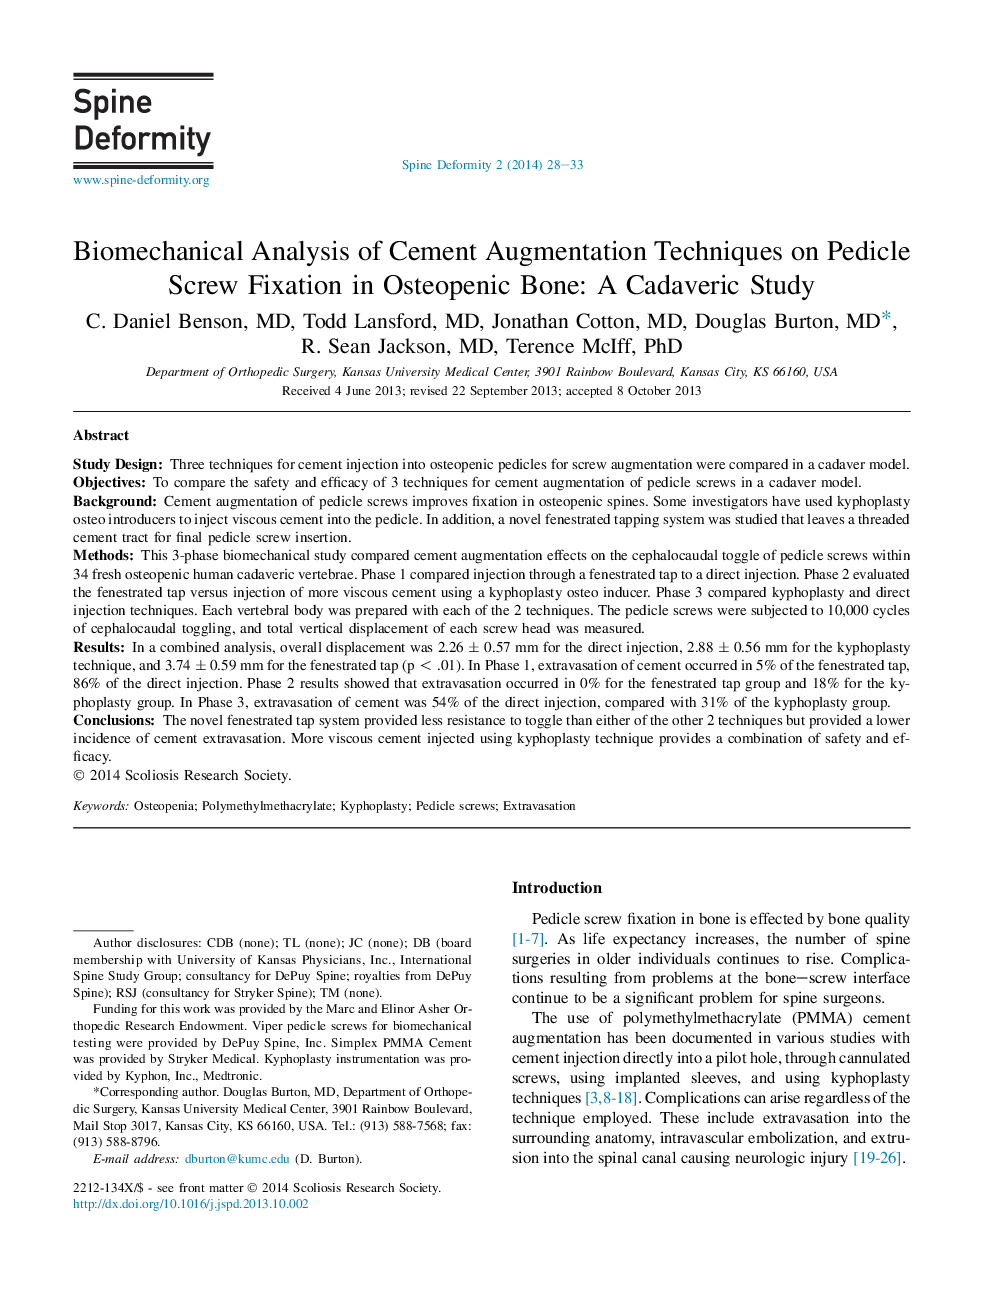 تجزیه و تحلیل بیومکانیک تکنیک های ارتقاء سیمان بر روی رفع اسکرو پدیکل در استخوان استئوپنیک: یک مطالعه کاداورریک 